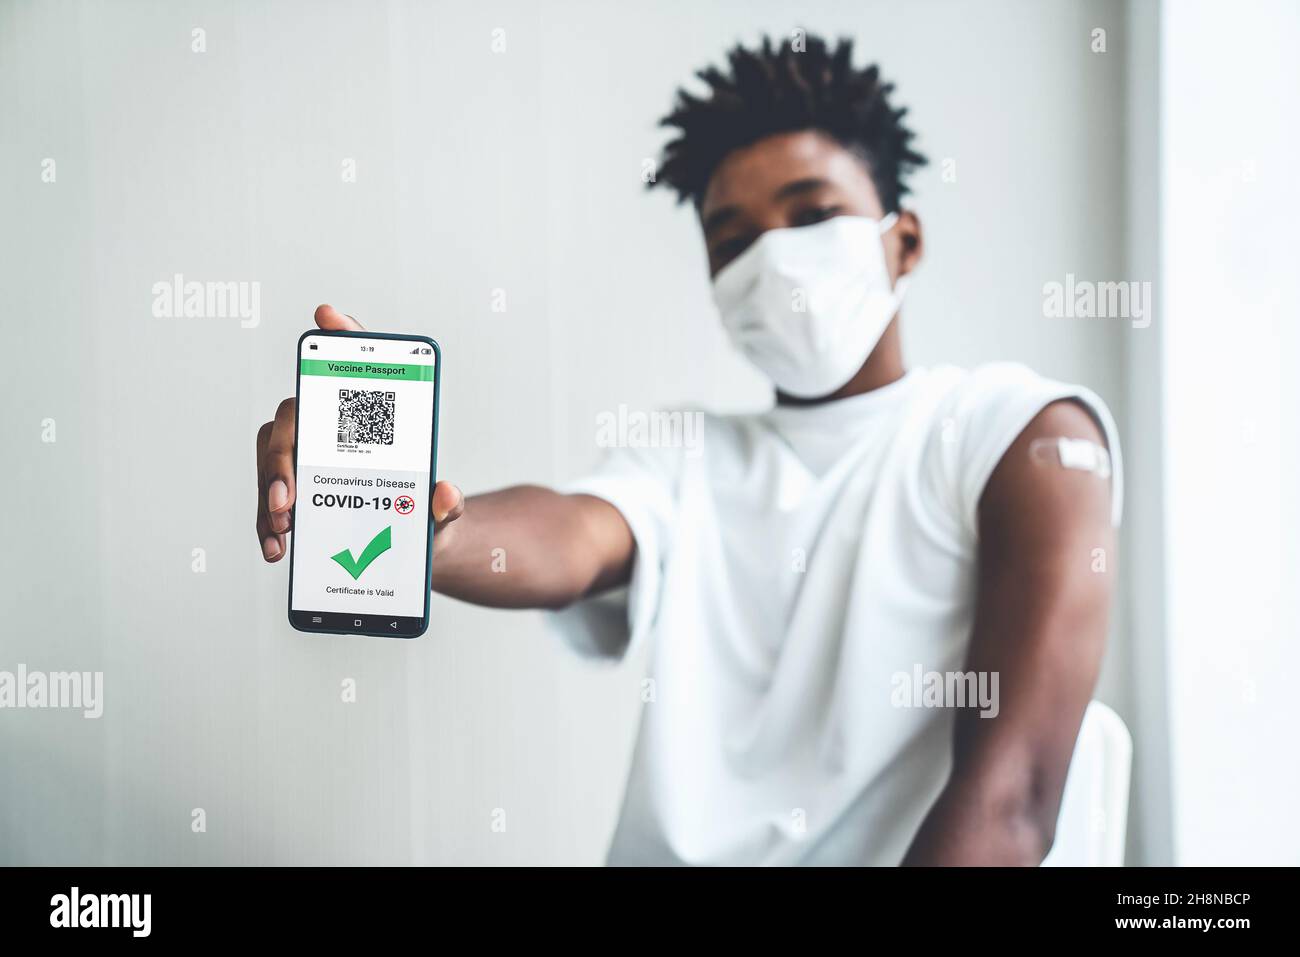 Un adolescent afro-américain présente un passeport vaccinal sur un téléphone portable pour valider l'autorisation de voyage par le document numérique Banque D'Images